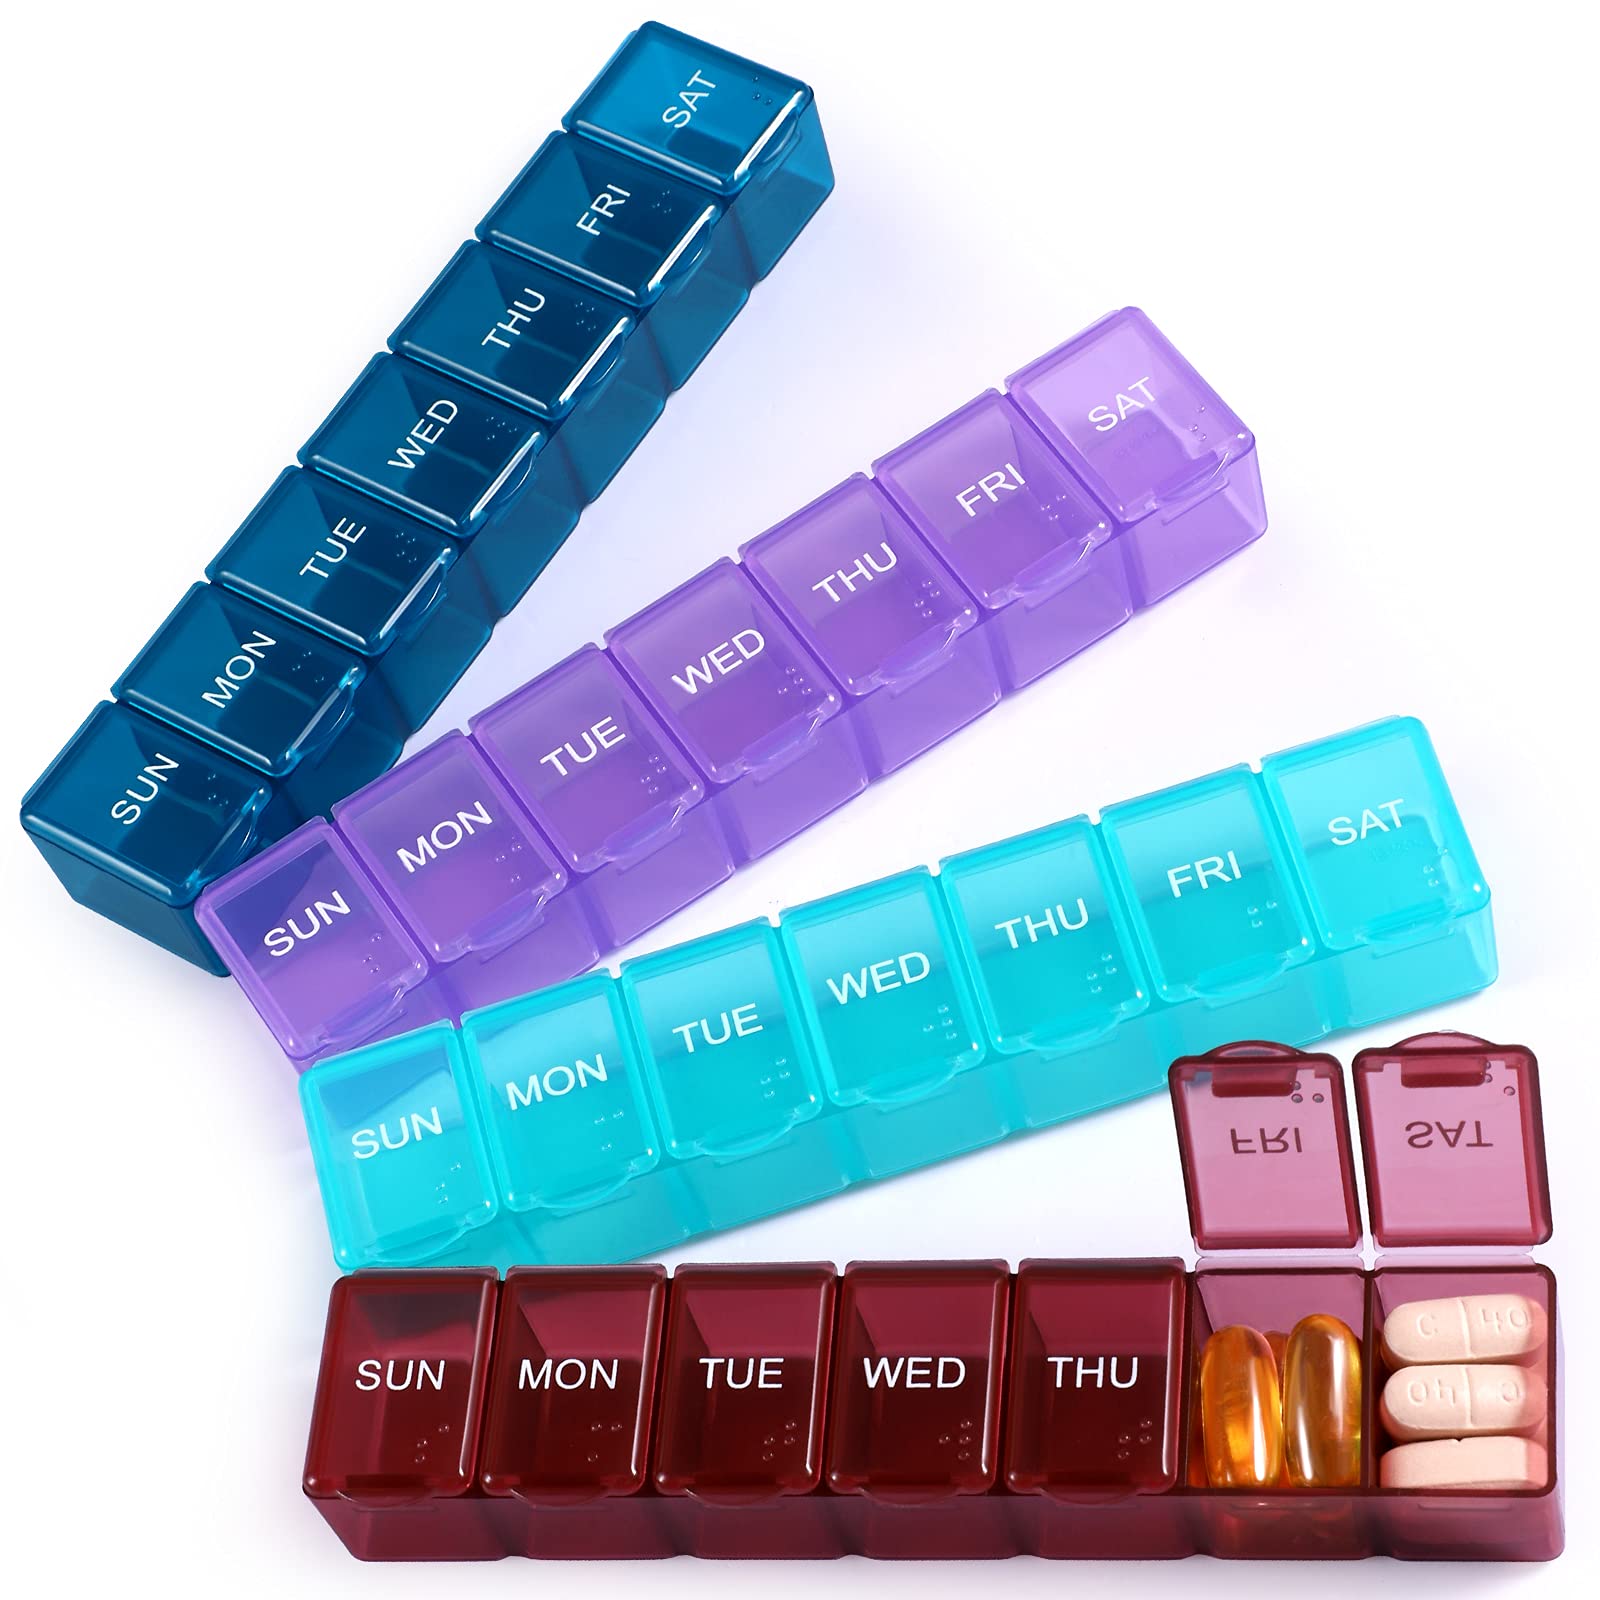 Grevosea 4 Pieces Small Pill Box Keychain, Portable Pill Cases